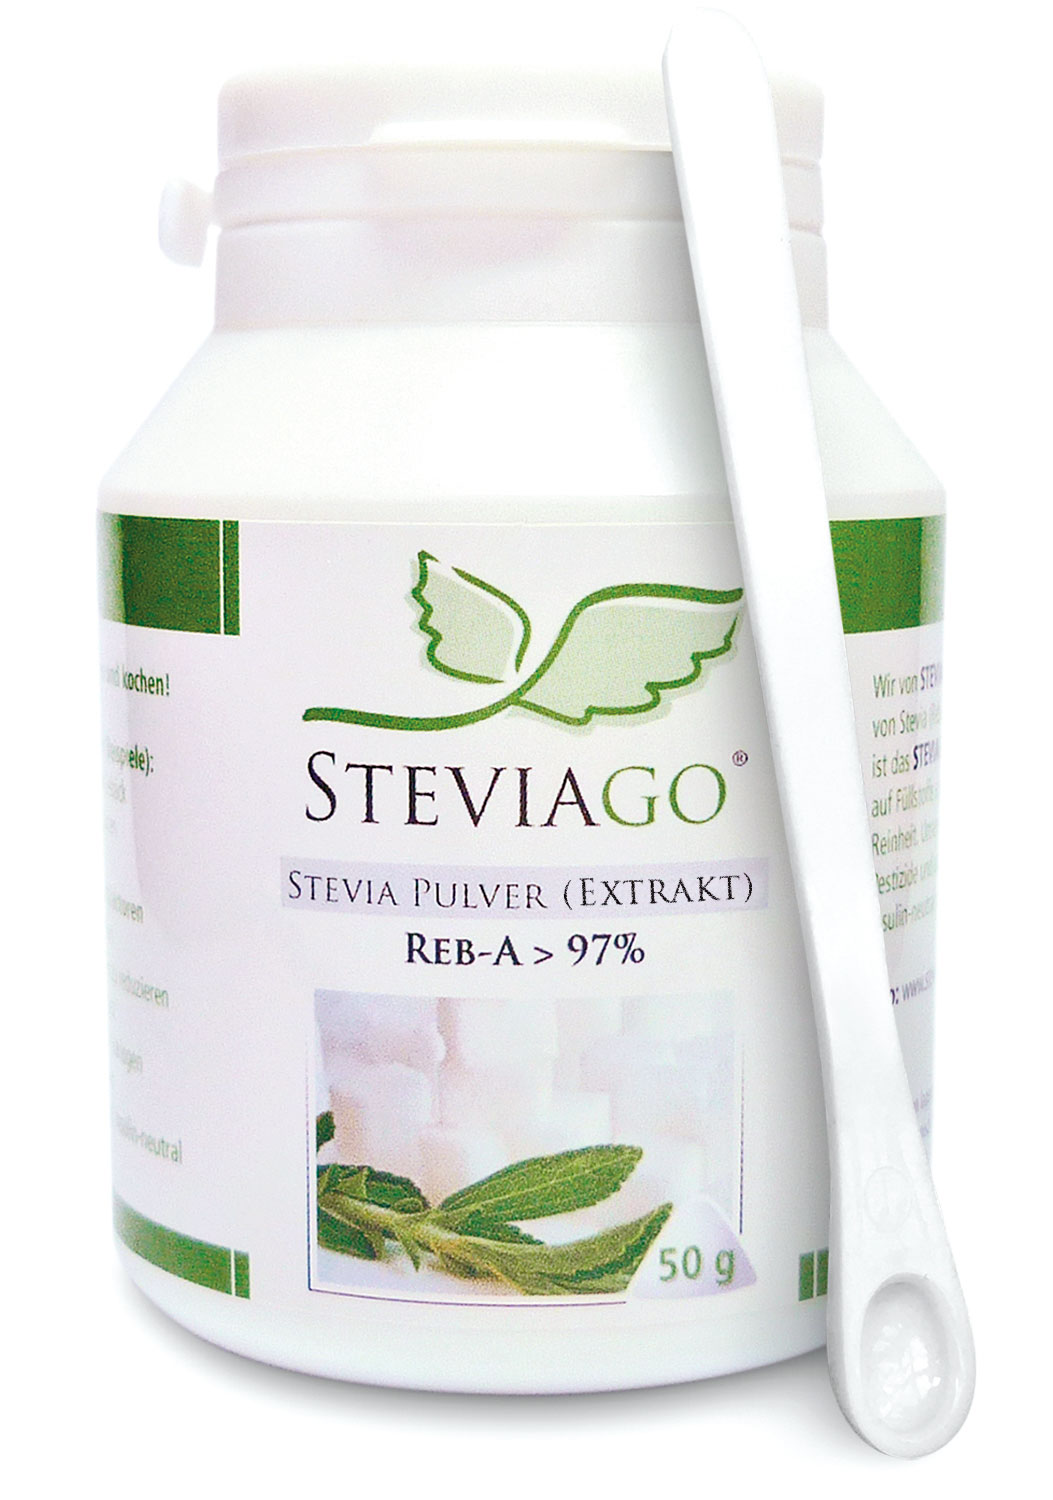 Stevia Pulver (Reb-A > 97%) - 50g